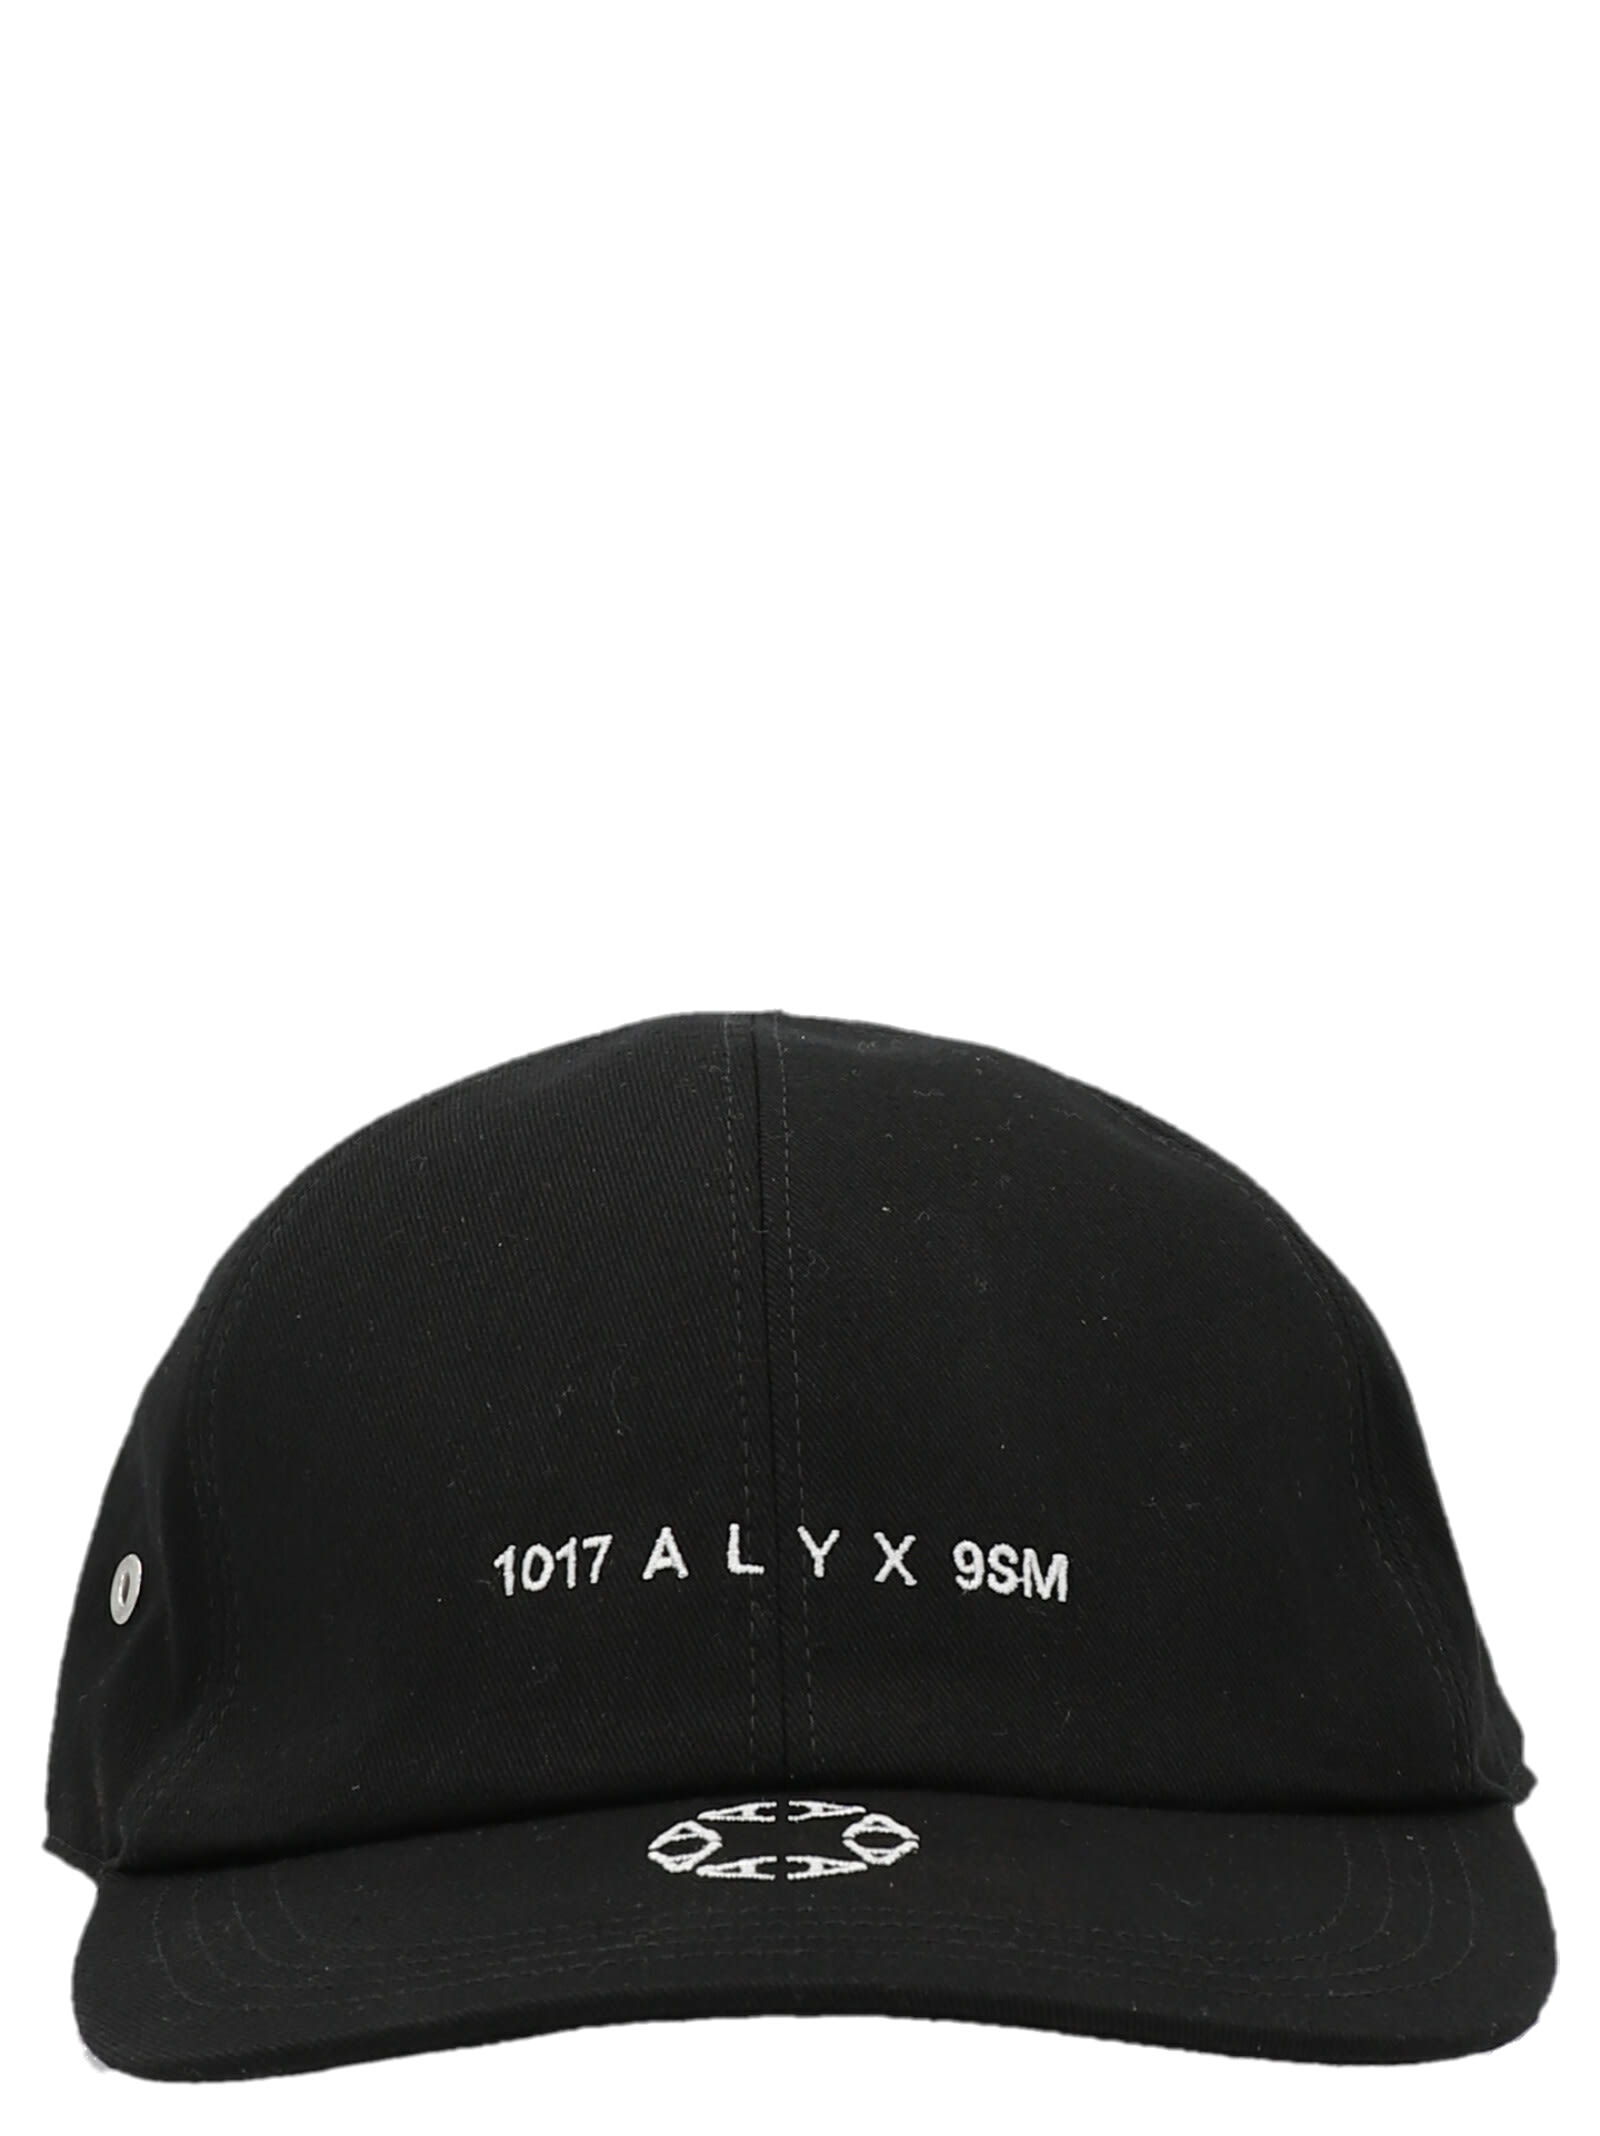 1017 ALYX 9SM, DENIM LOGO BASEBALL HAT